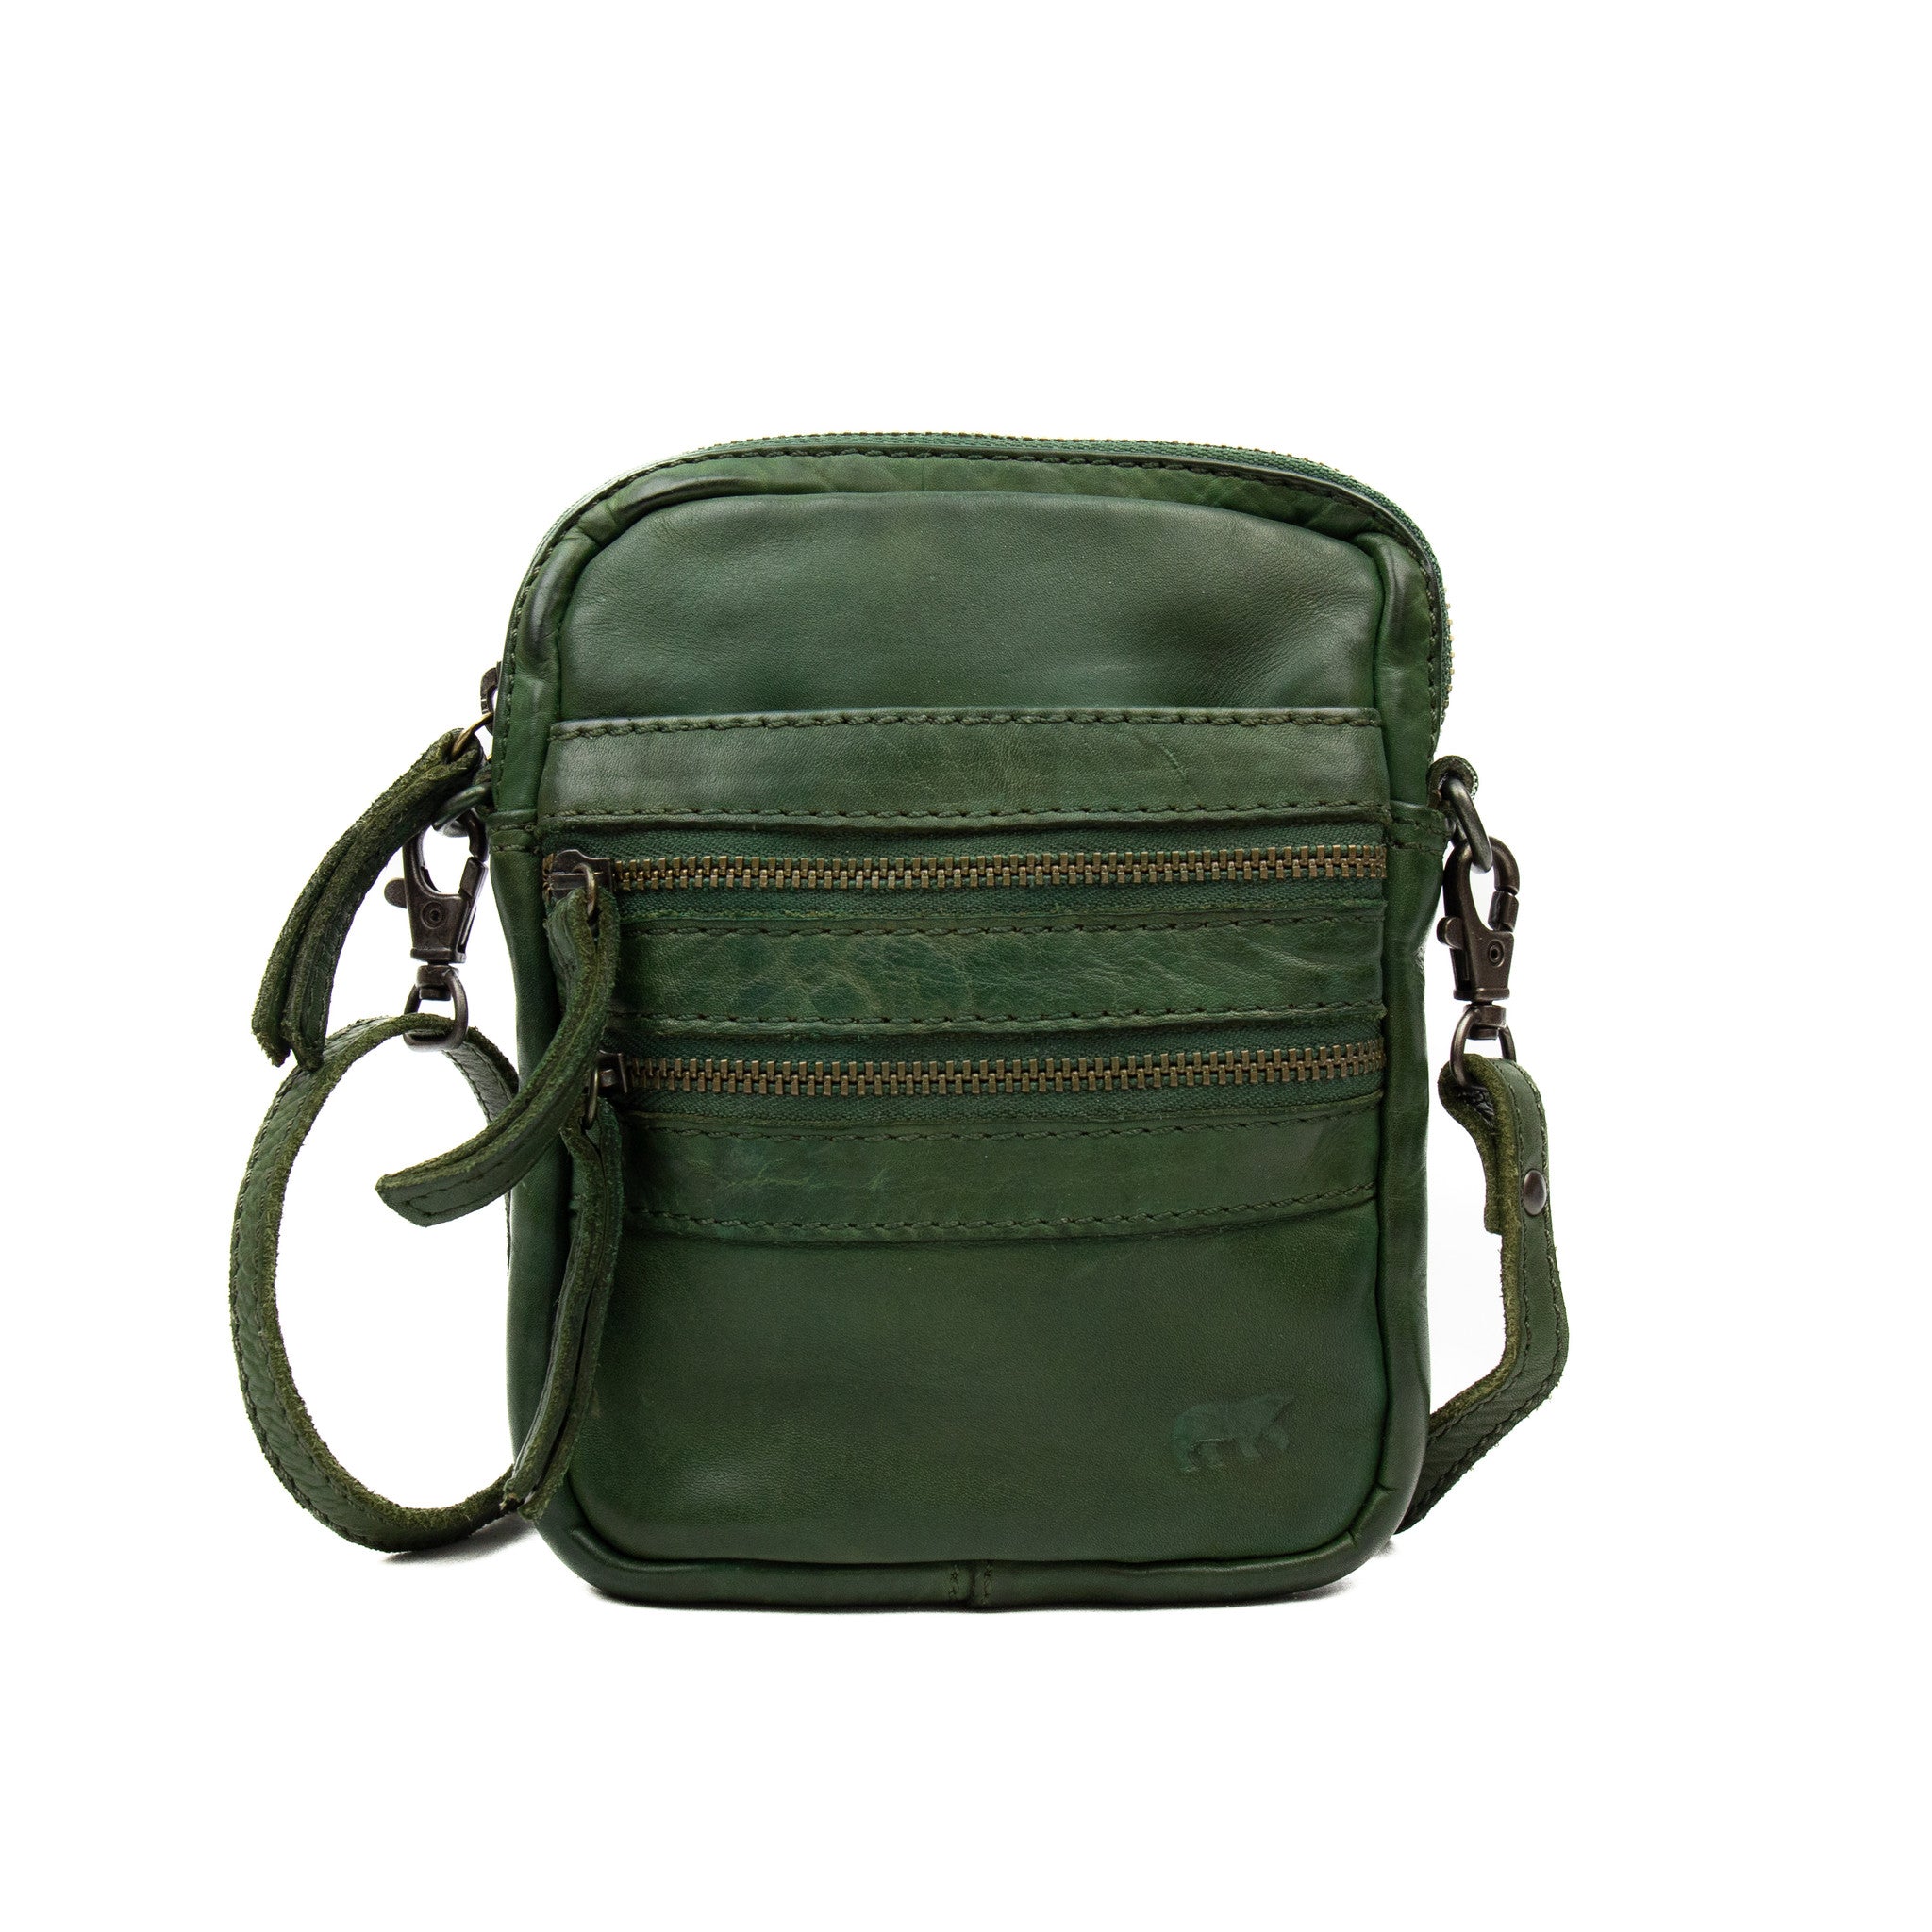 Shoulder bag 'Vikas' olive green - CL 3701